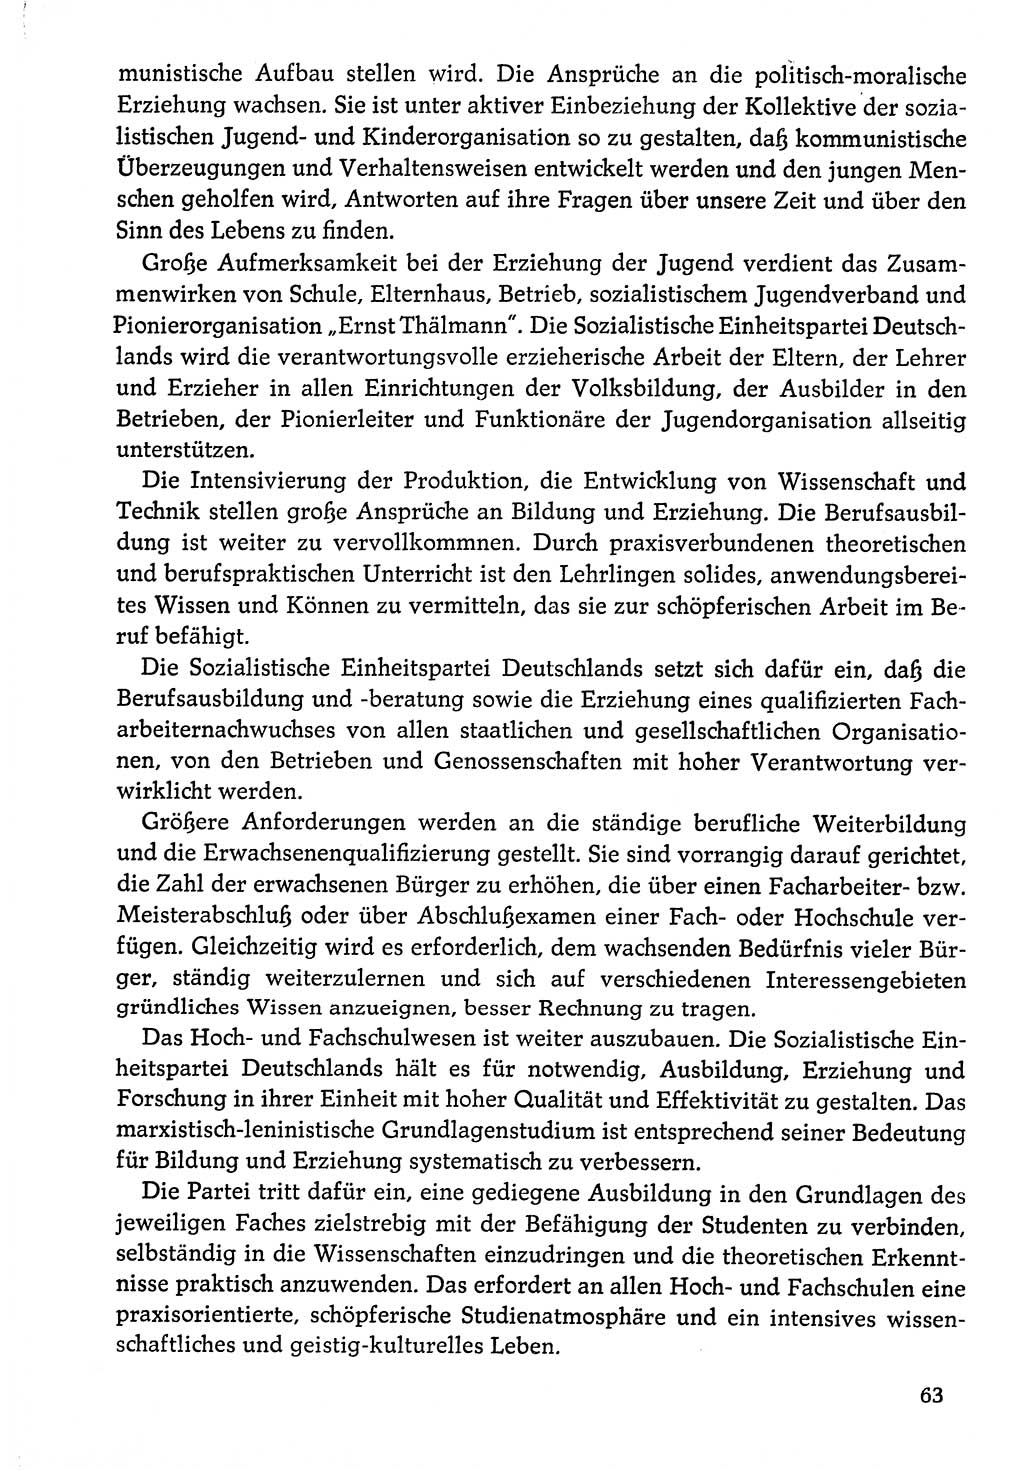 Dokumente der Sozialistischen Einheitspartei Deutschlands (SED) [Deutsche Demokratische Republik (DDR)] 1976-1977, Seite 63 (Dok. SED DDR 1976-1977, S. 63)